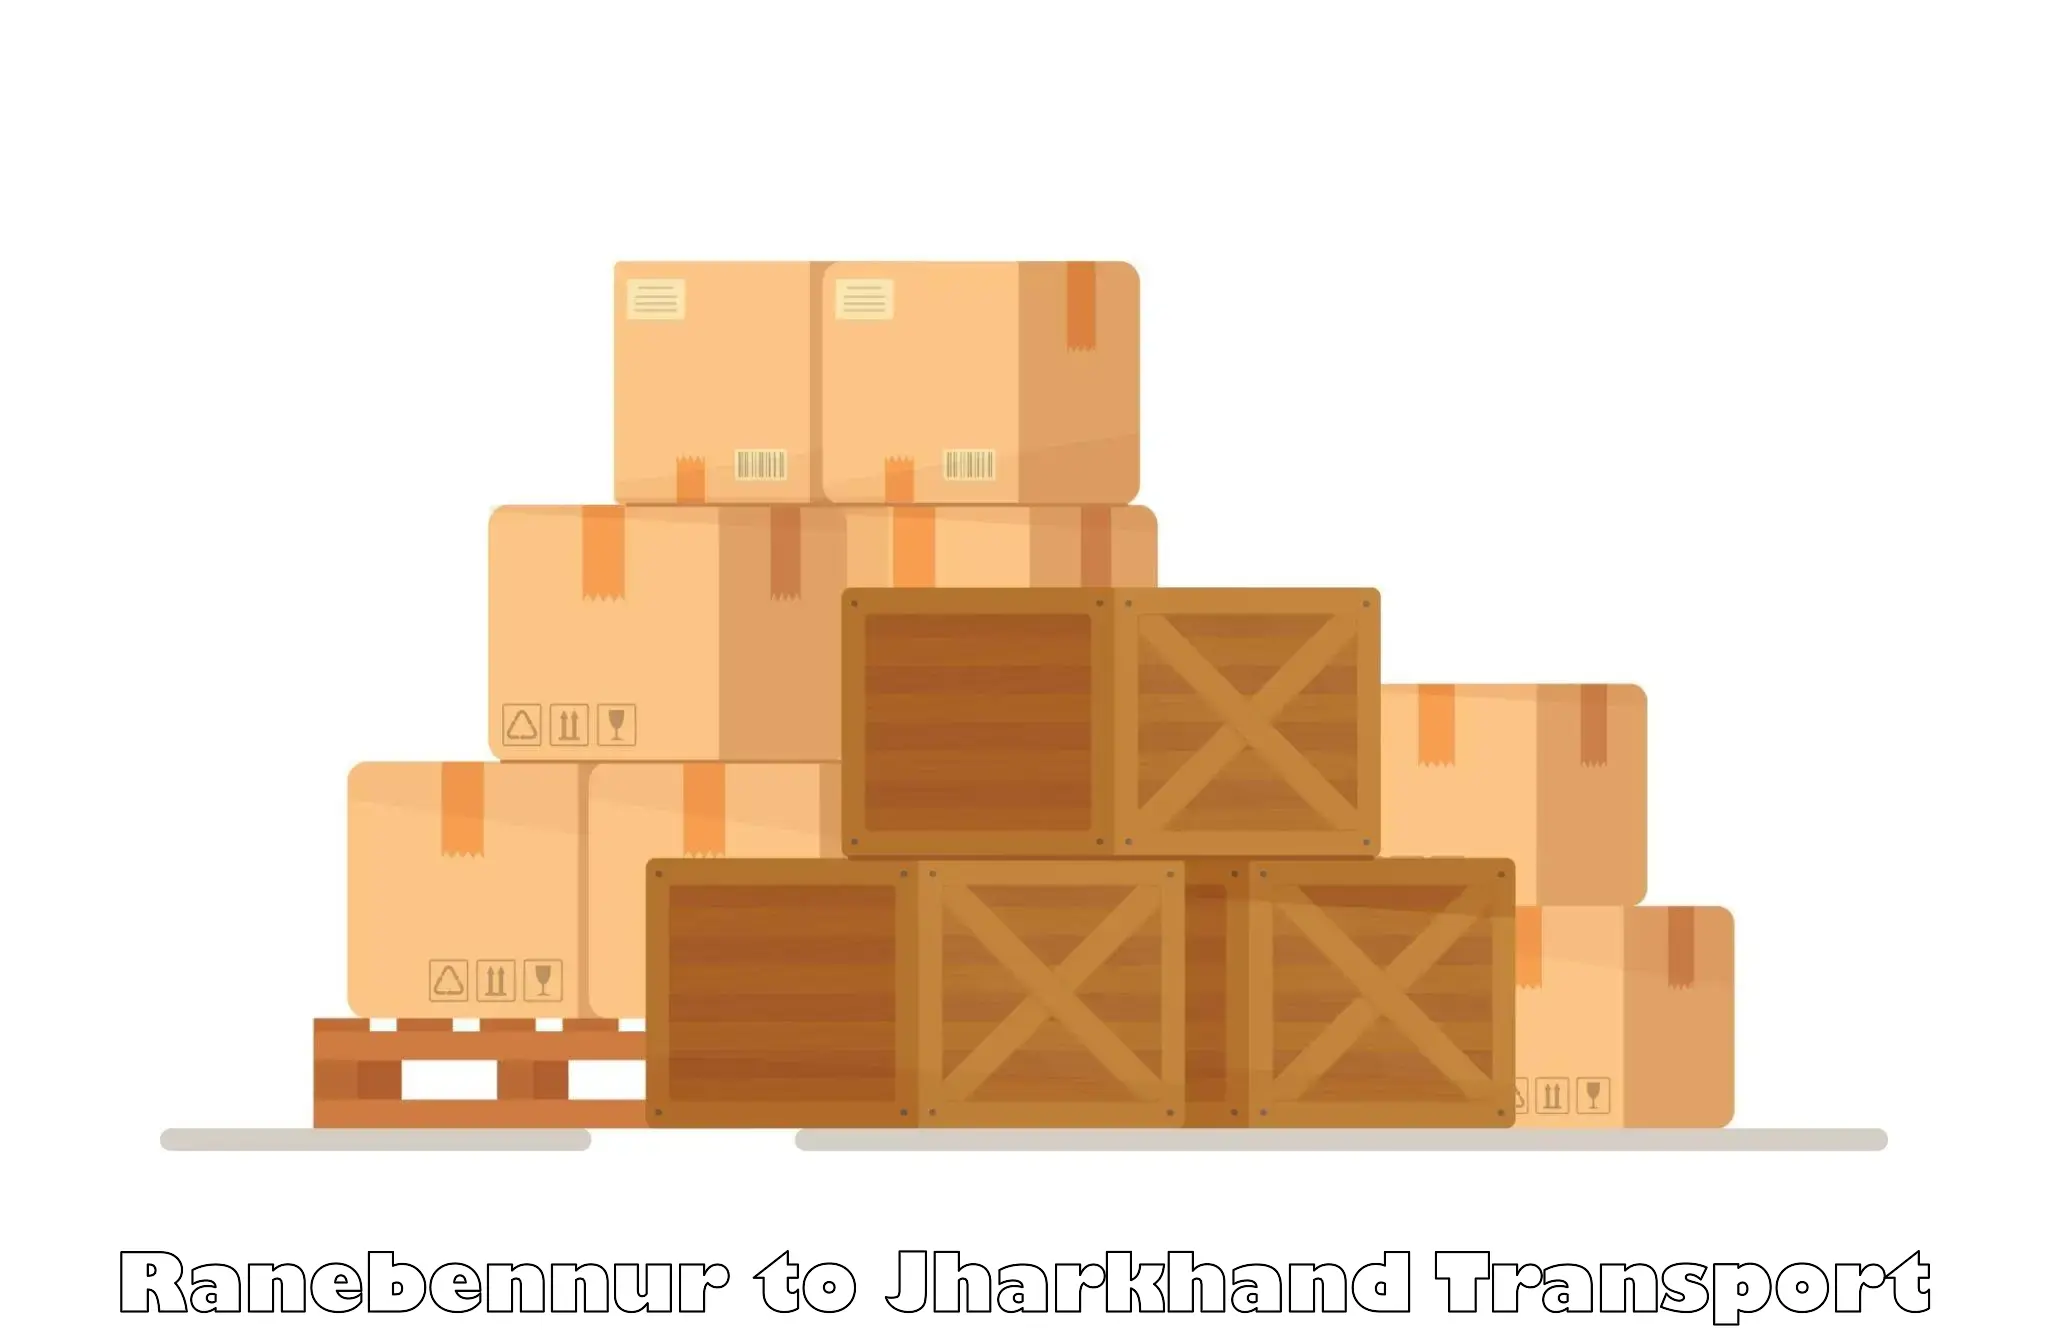 Container transport service Ranebennur to Dumka